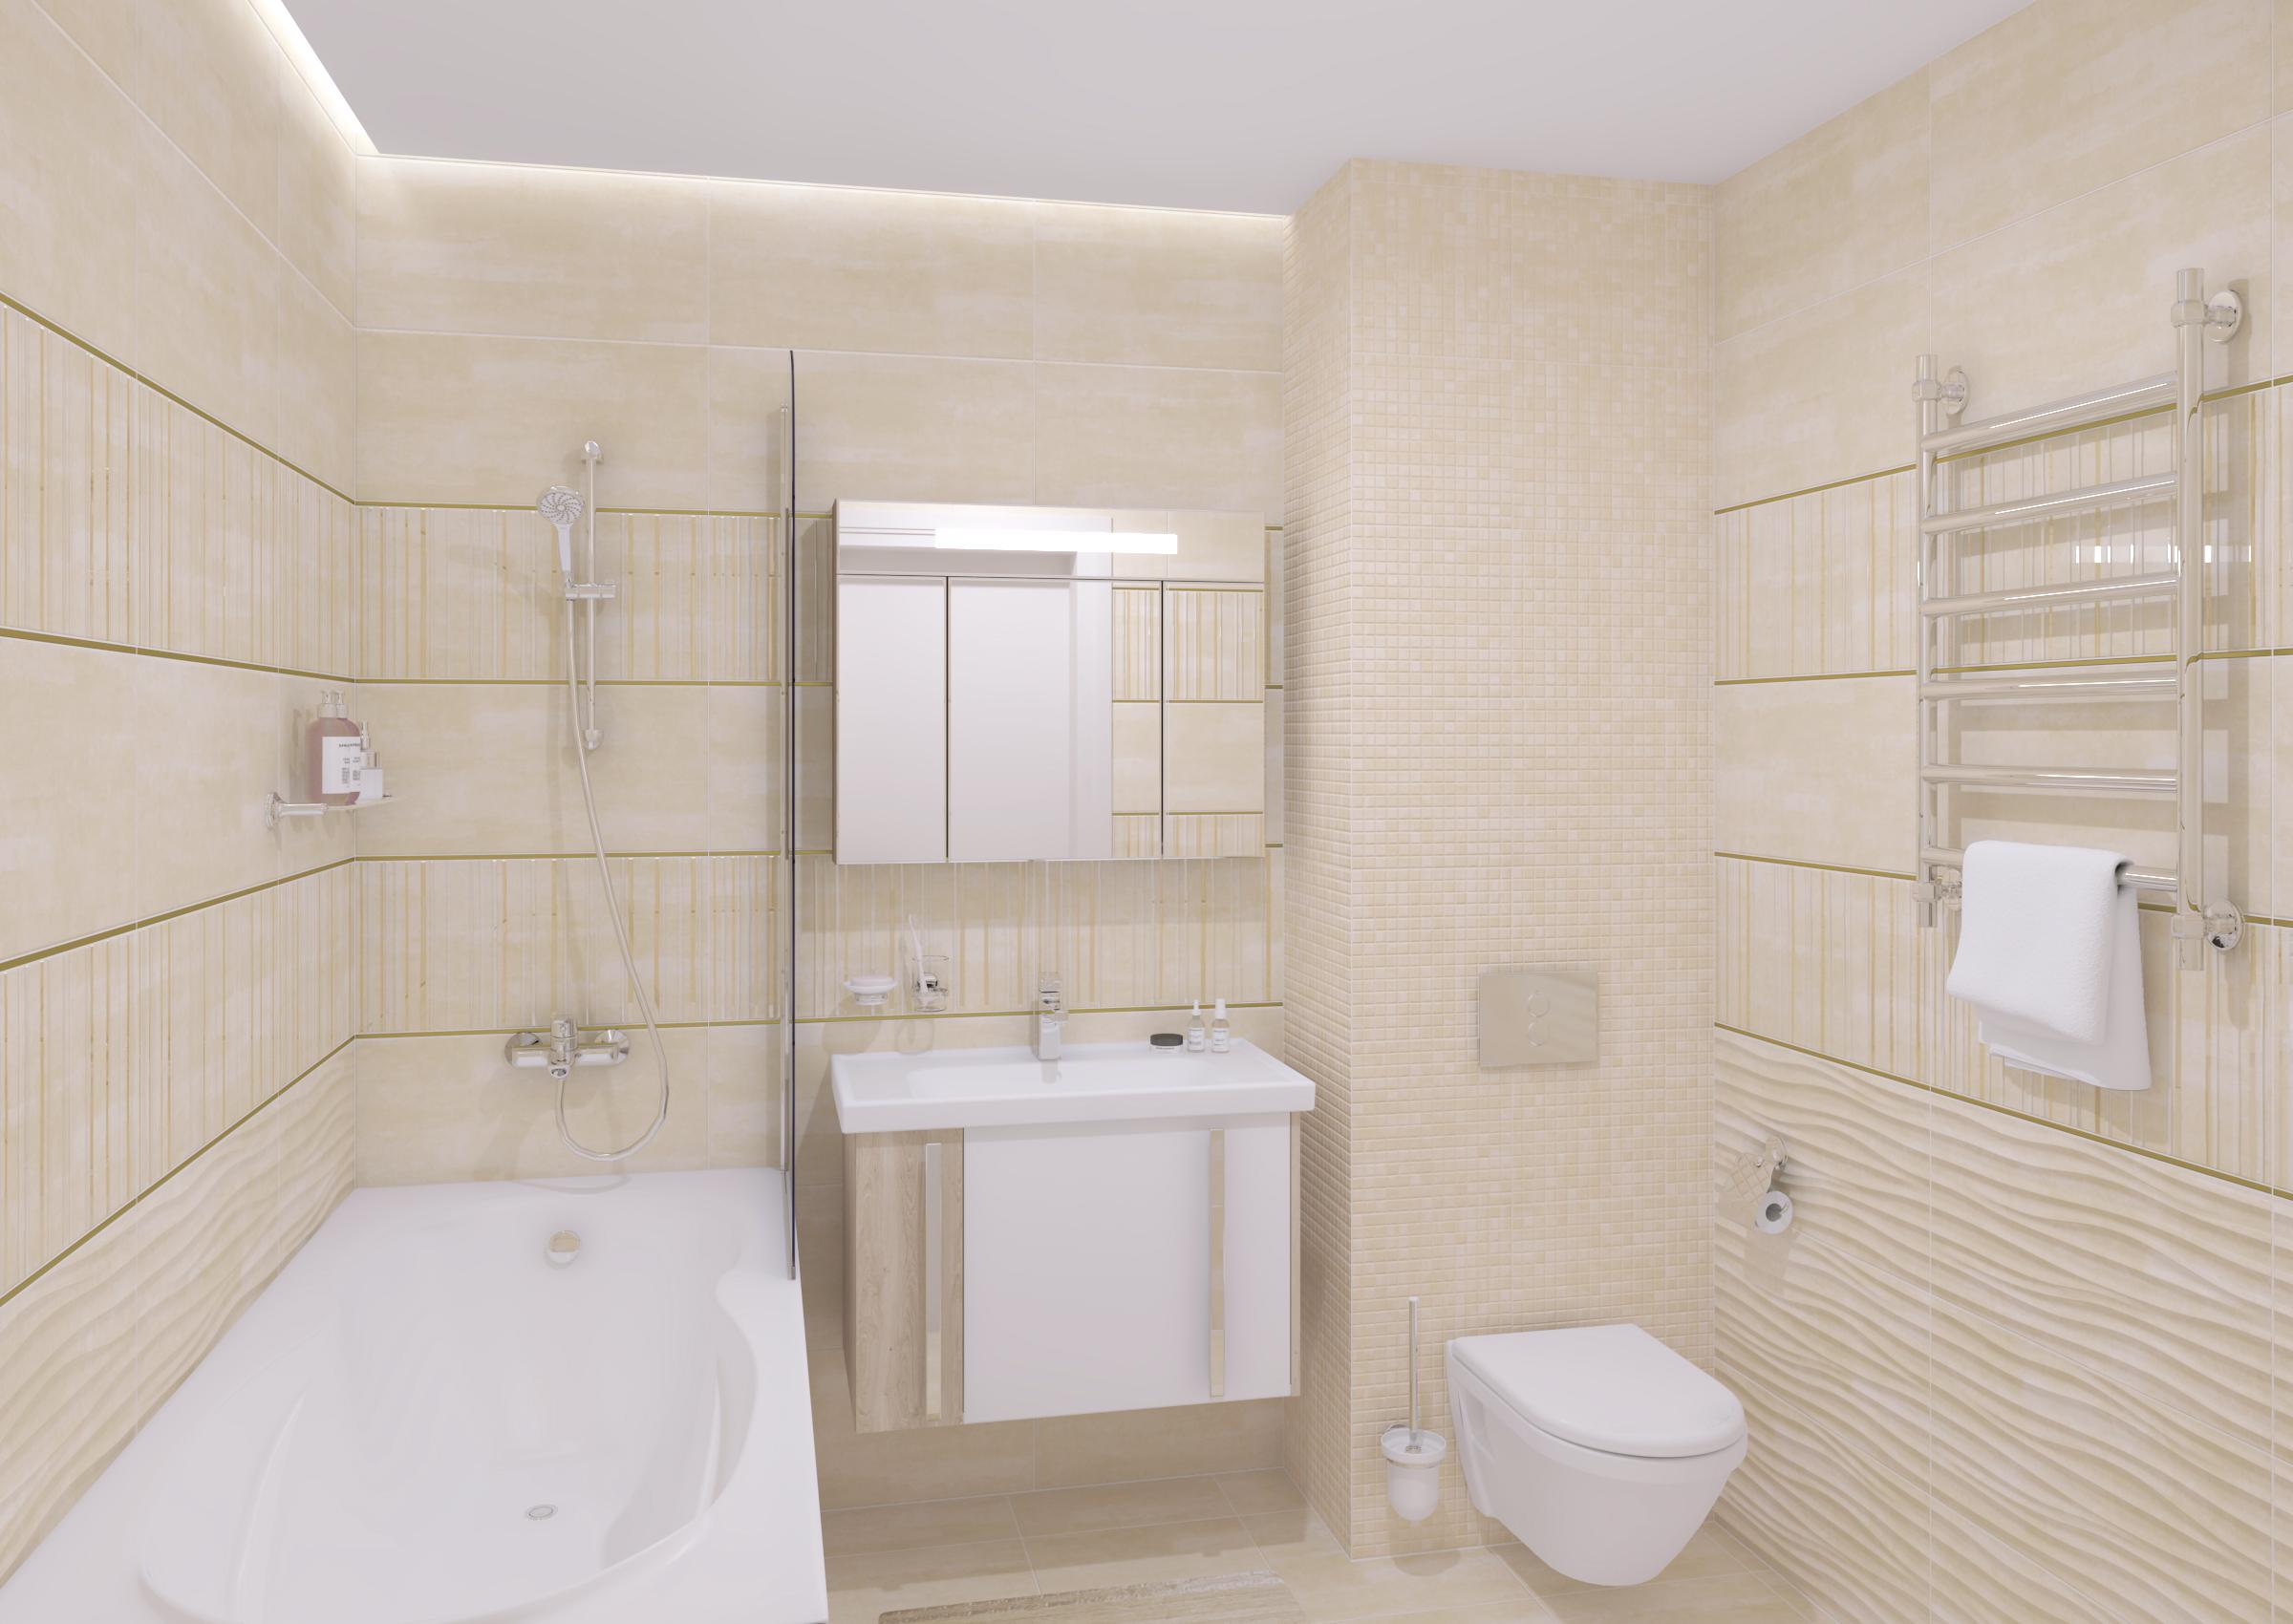 Бежевая ванная: секреты и правила дизайна (48 фото) | Дизайн и интерьер ванной комнаты